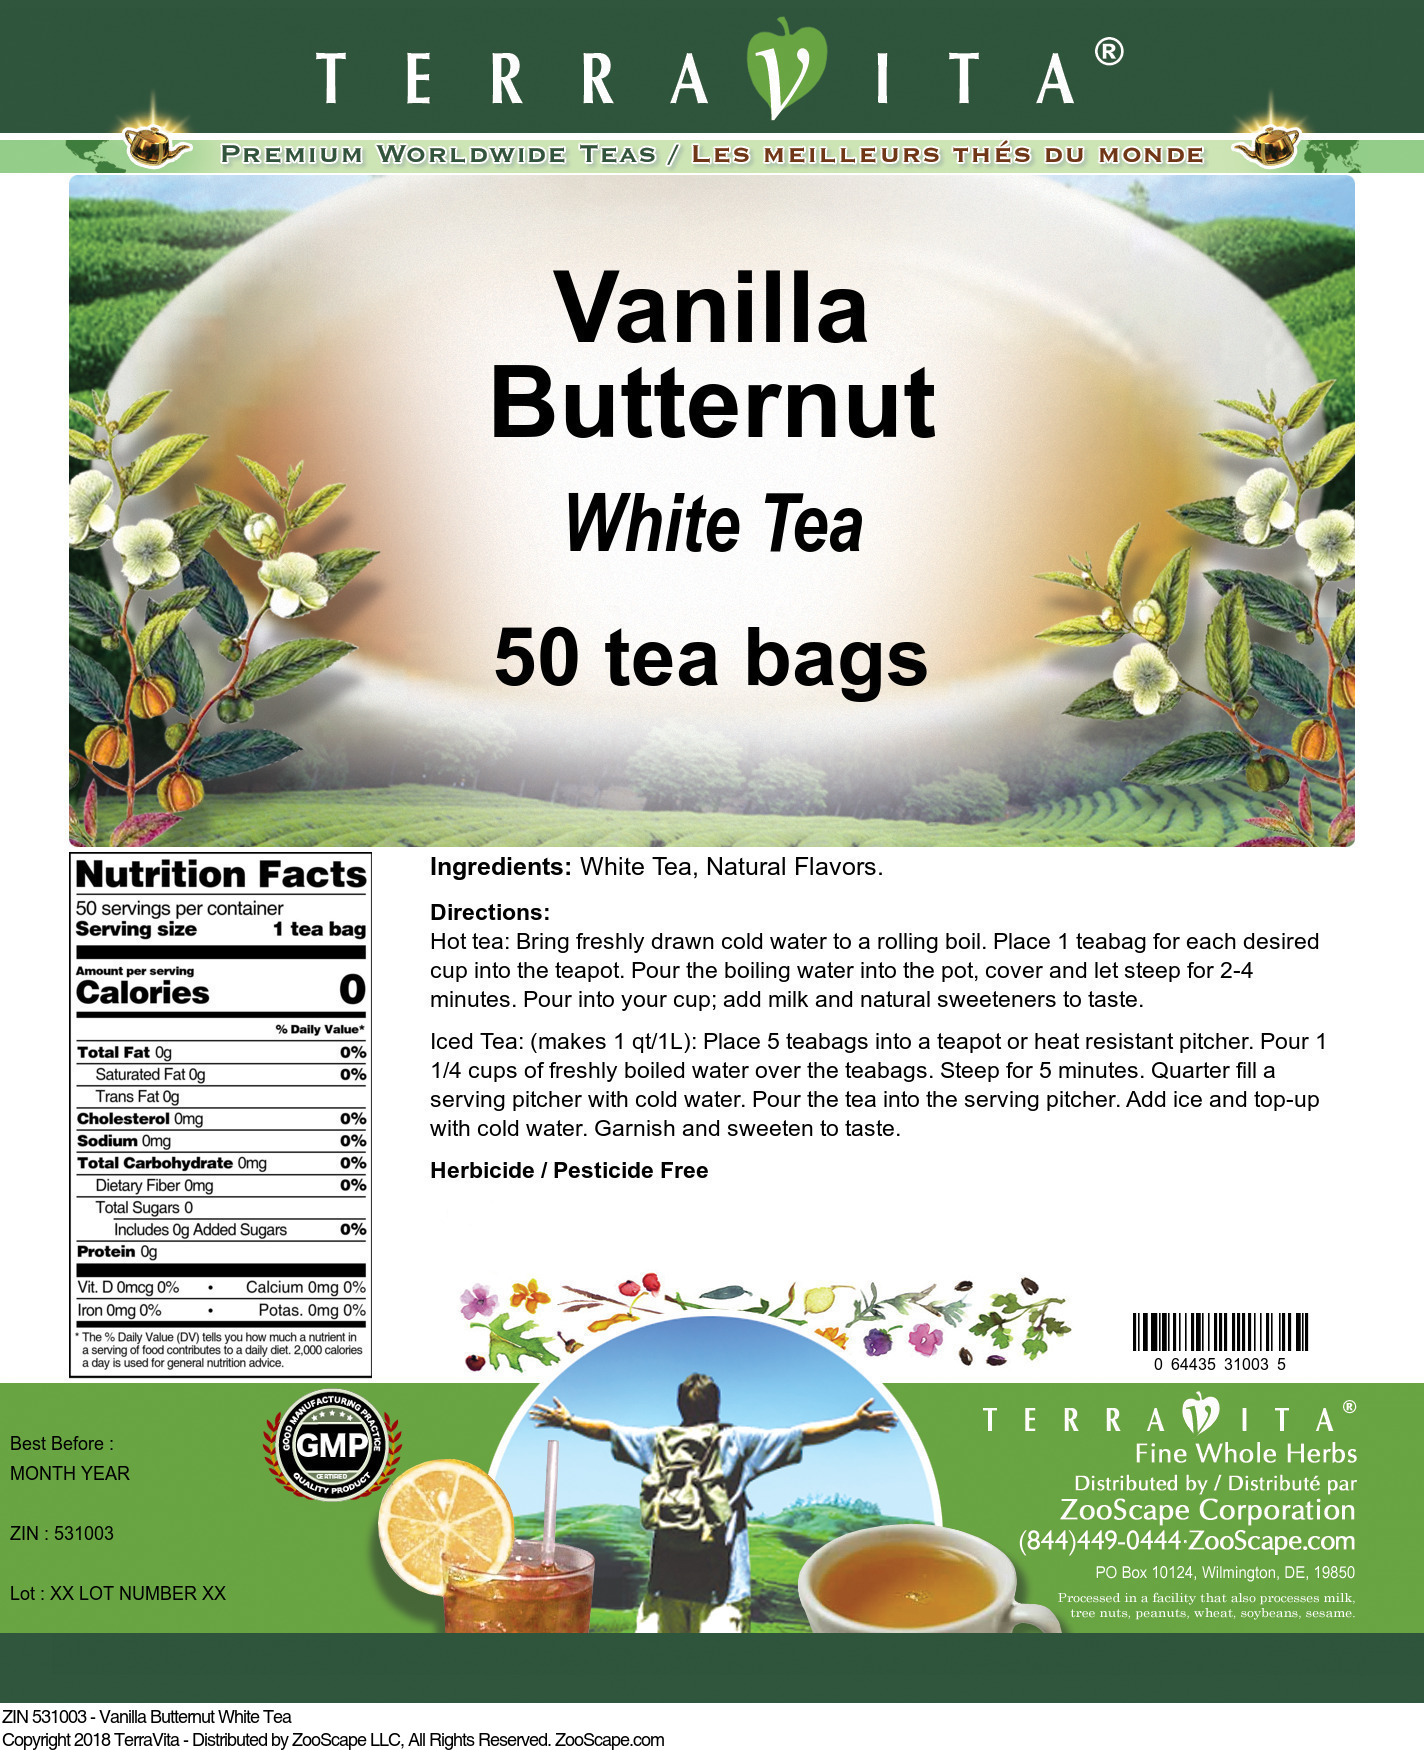 Vanilla Butternut White Tea - Label